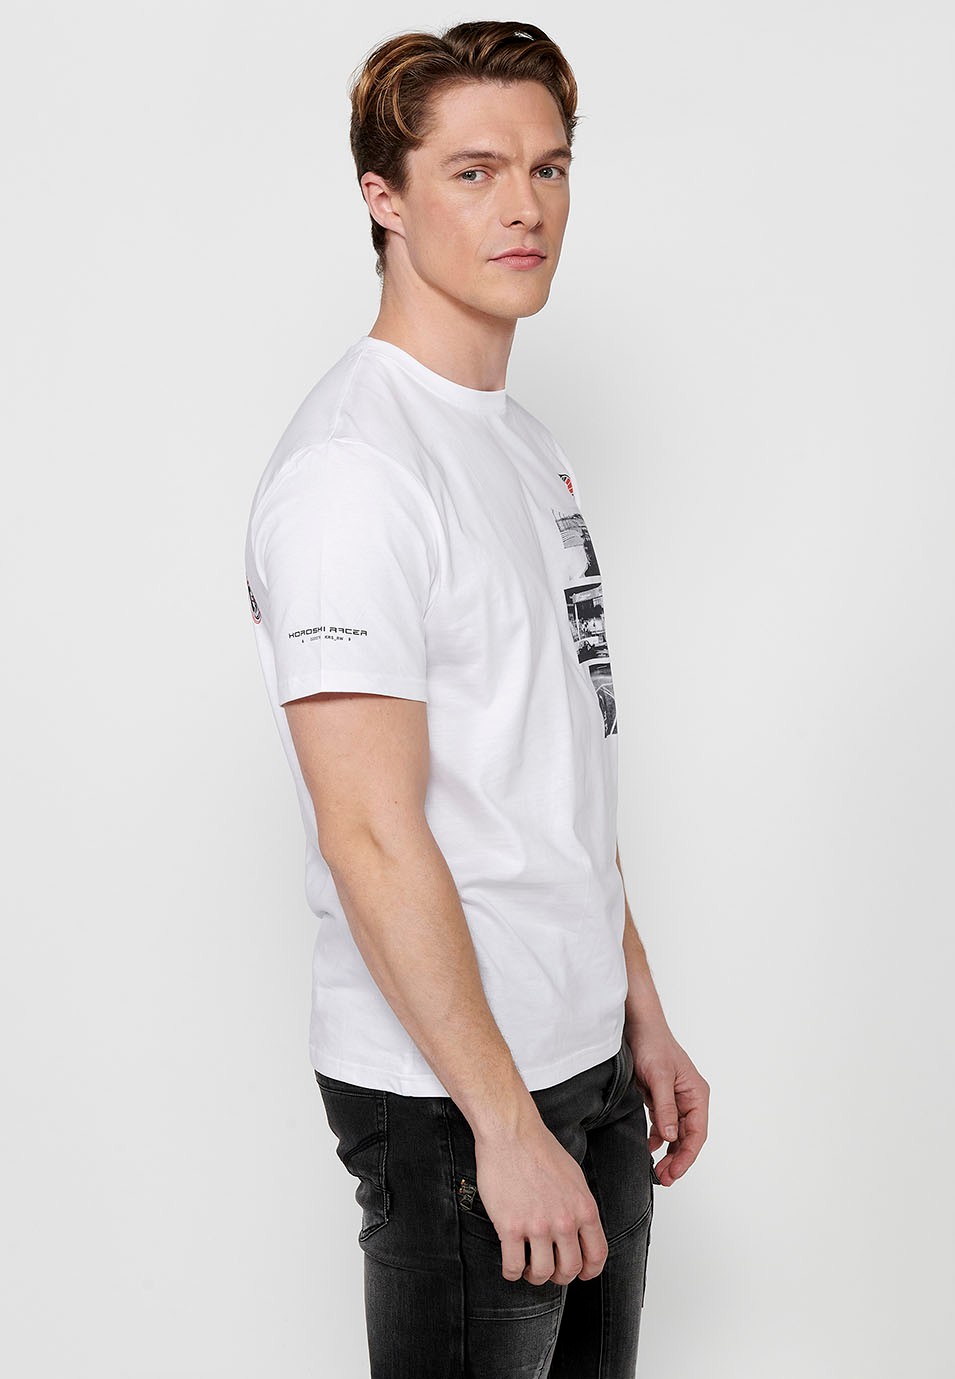 Kurzärmliges Herren-T-Shirt aus weißer Baumwolle mit mehrfarbigem Aufdruck auf der Brust 2